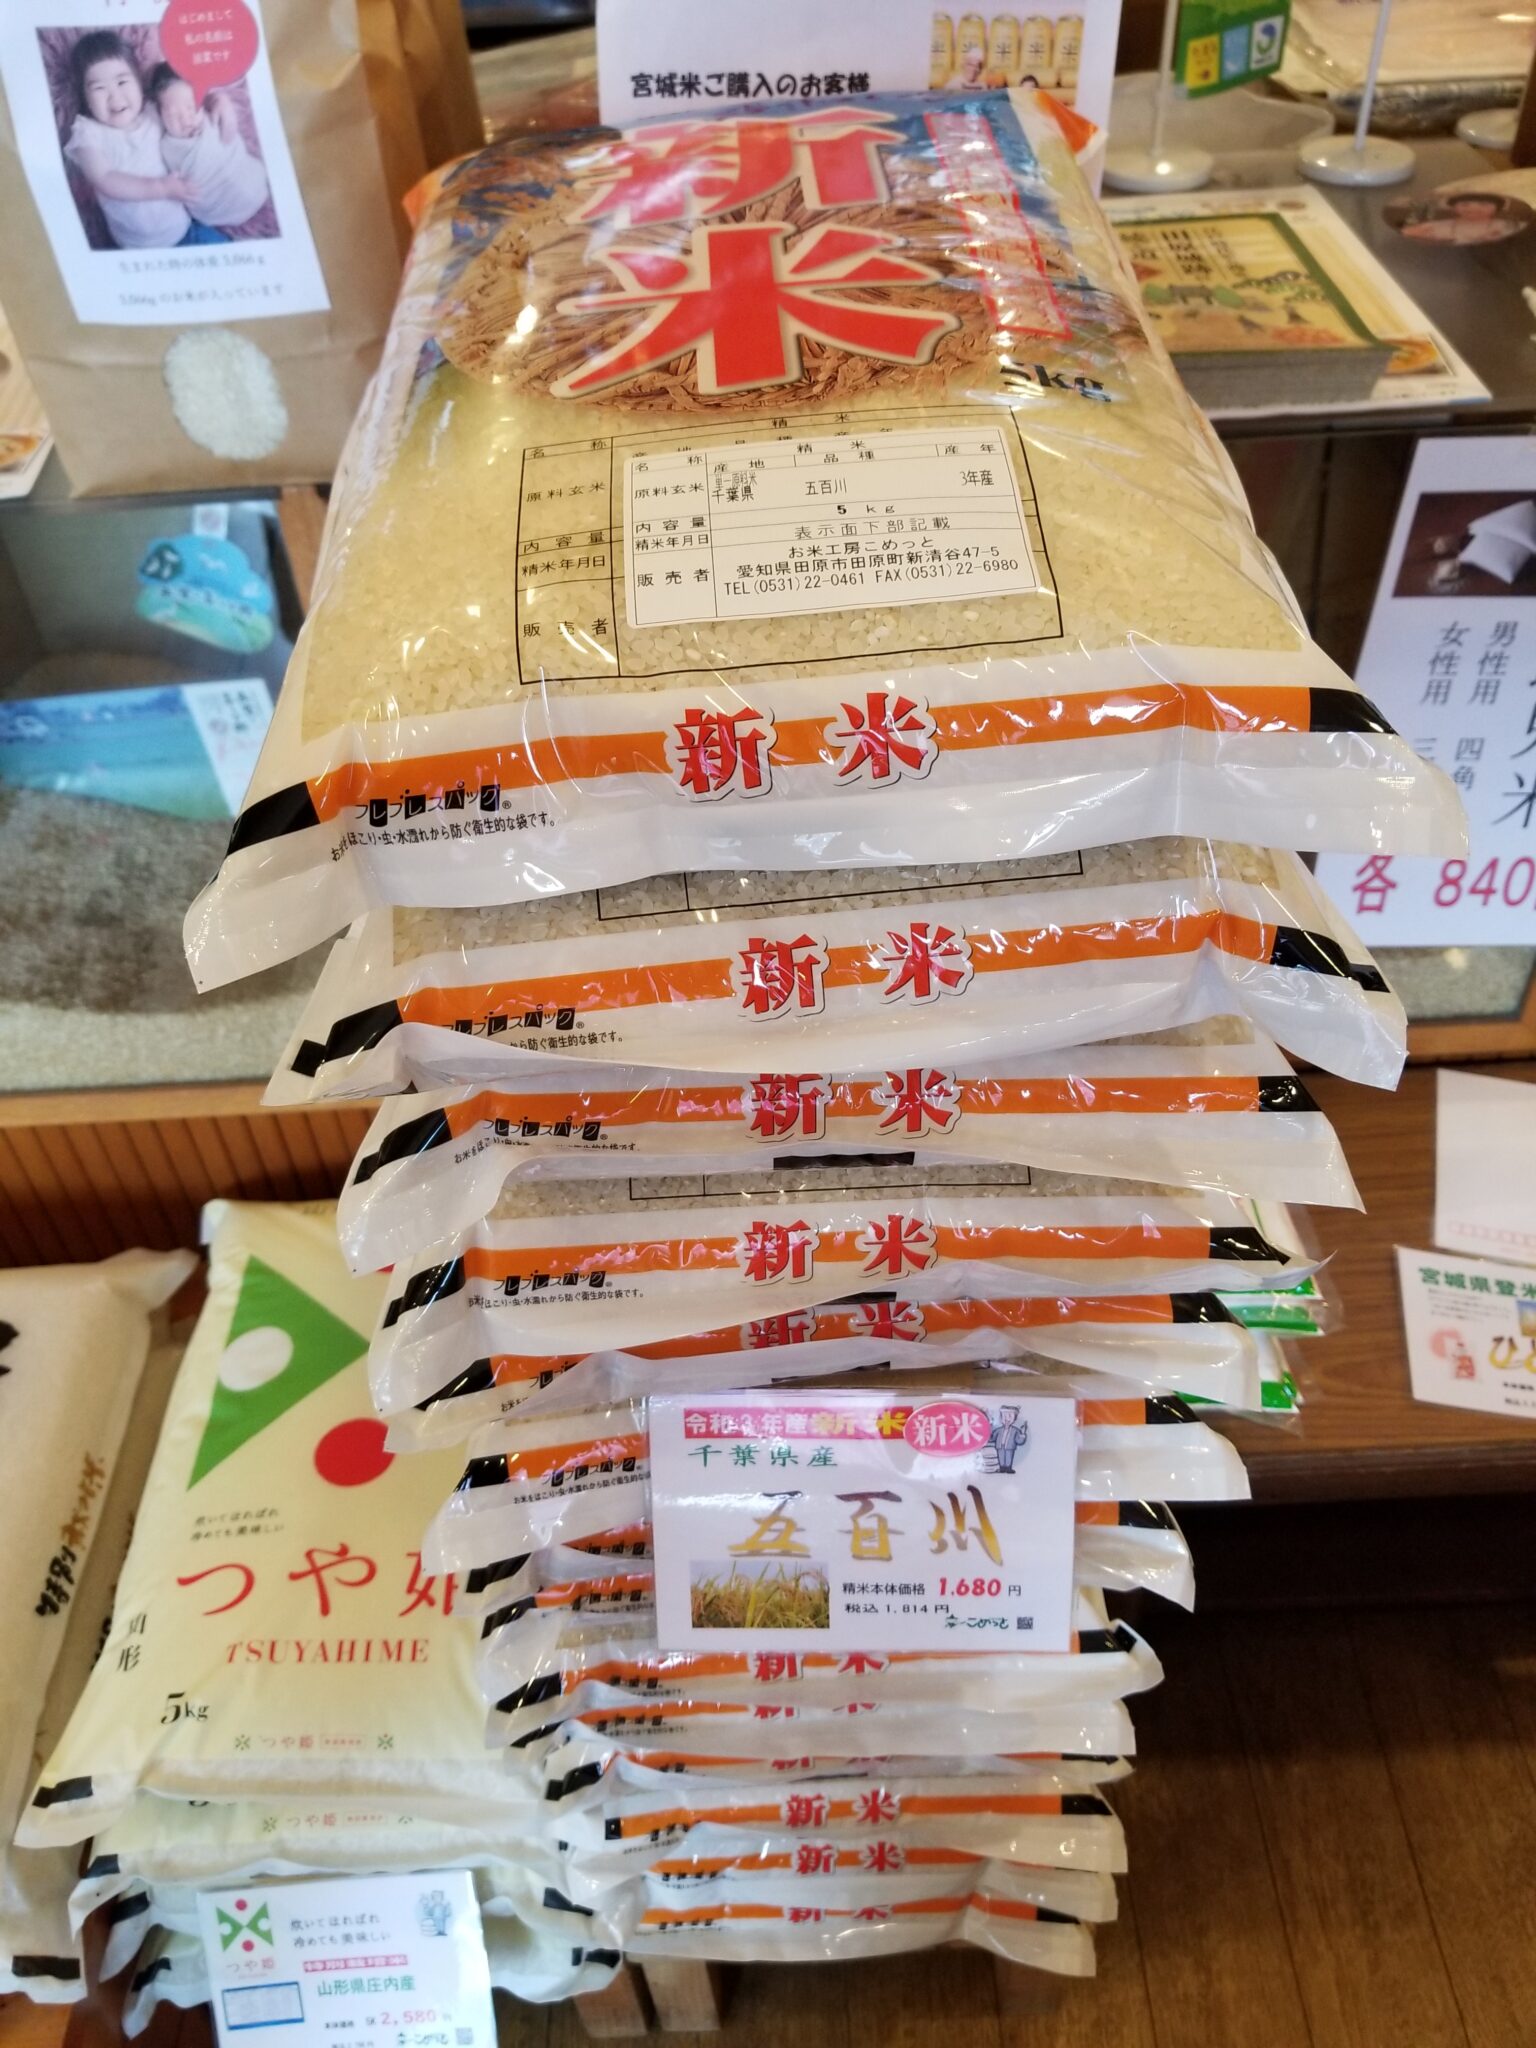 入荷情報 | お米工房こめっと | 愛知県田原市のお米マイスター認定の米穀店